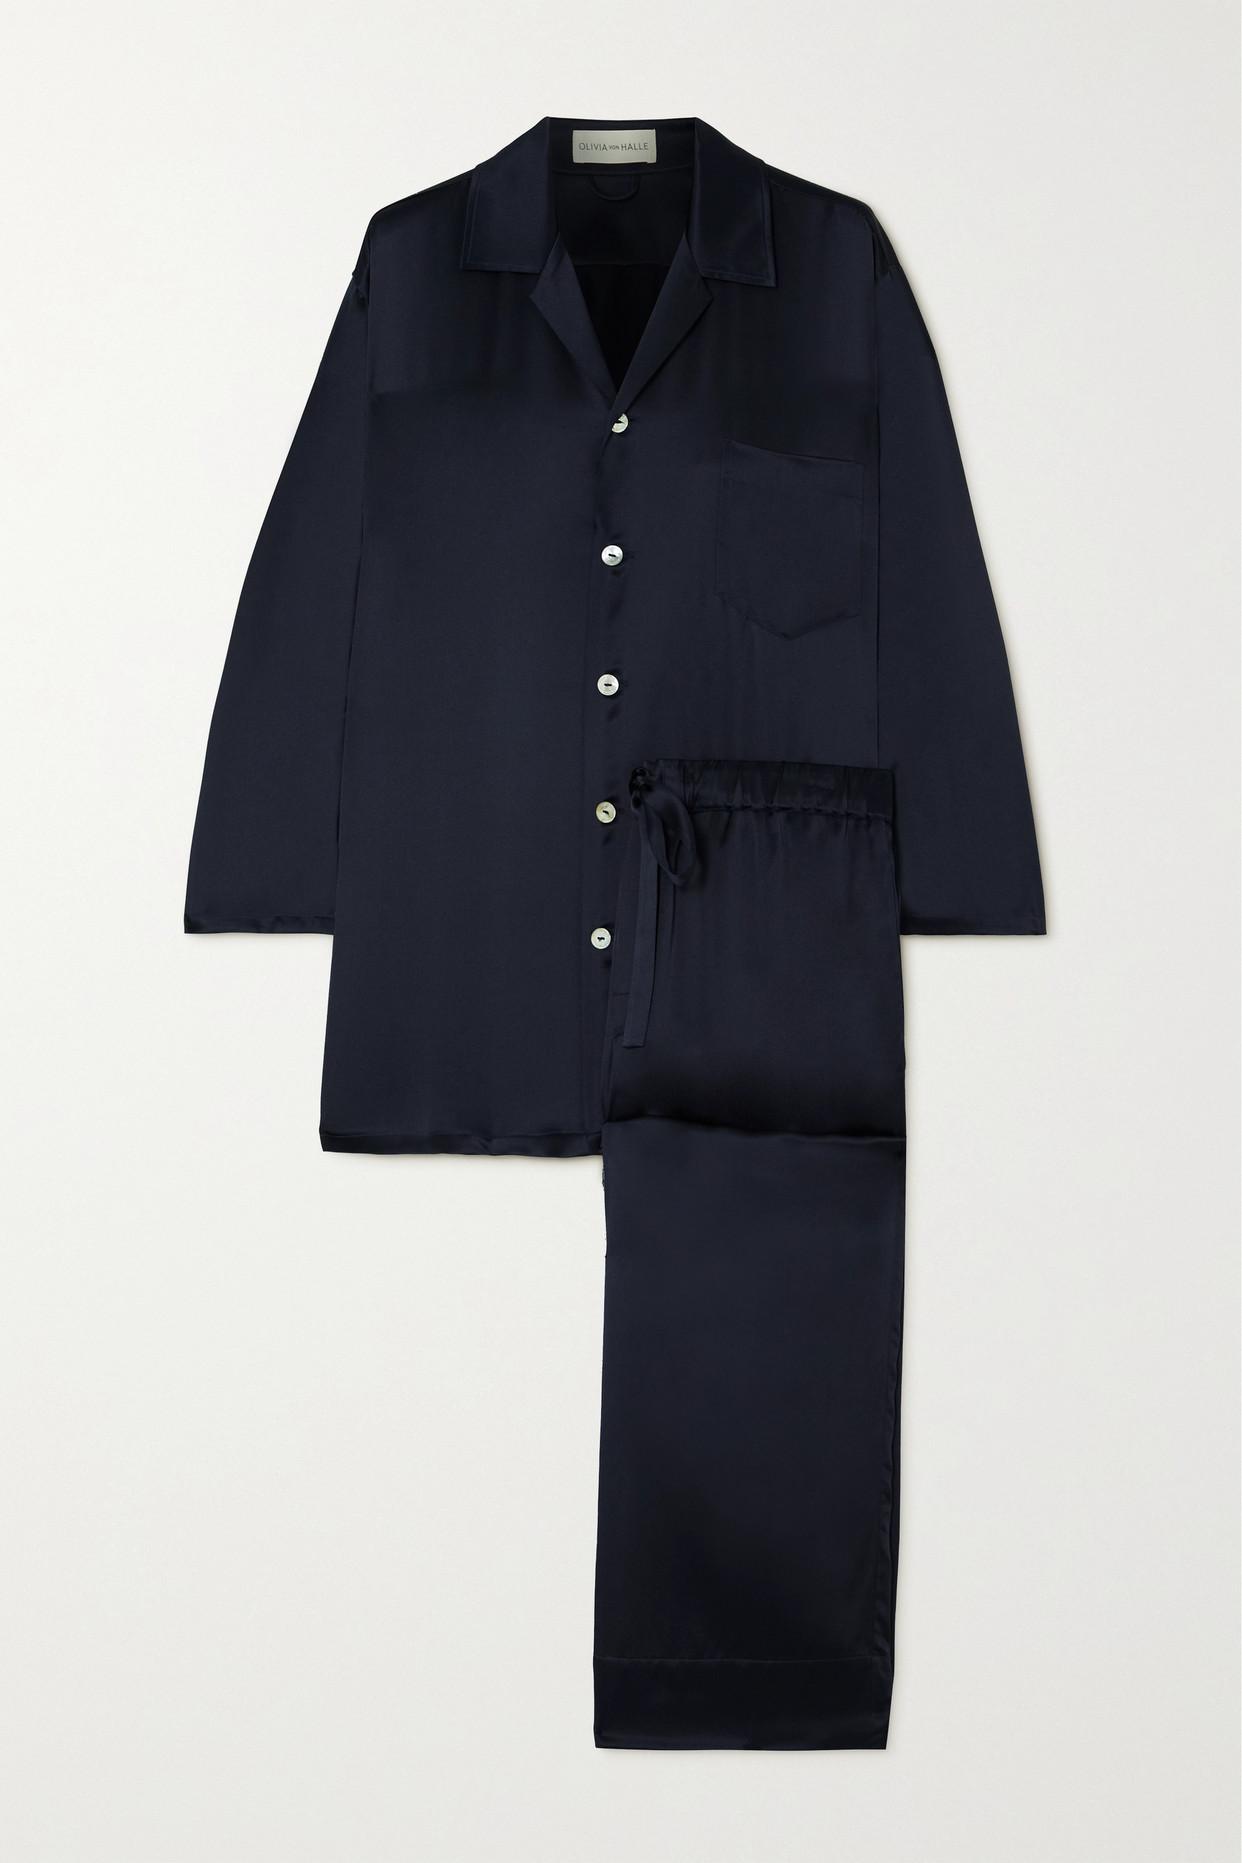 Olivia Von Halle Casablanca Silk-satin Pajama Set in Blue | Lyst